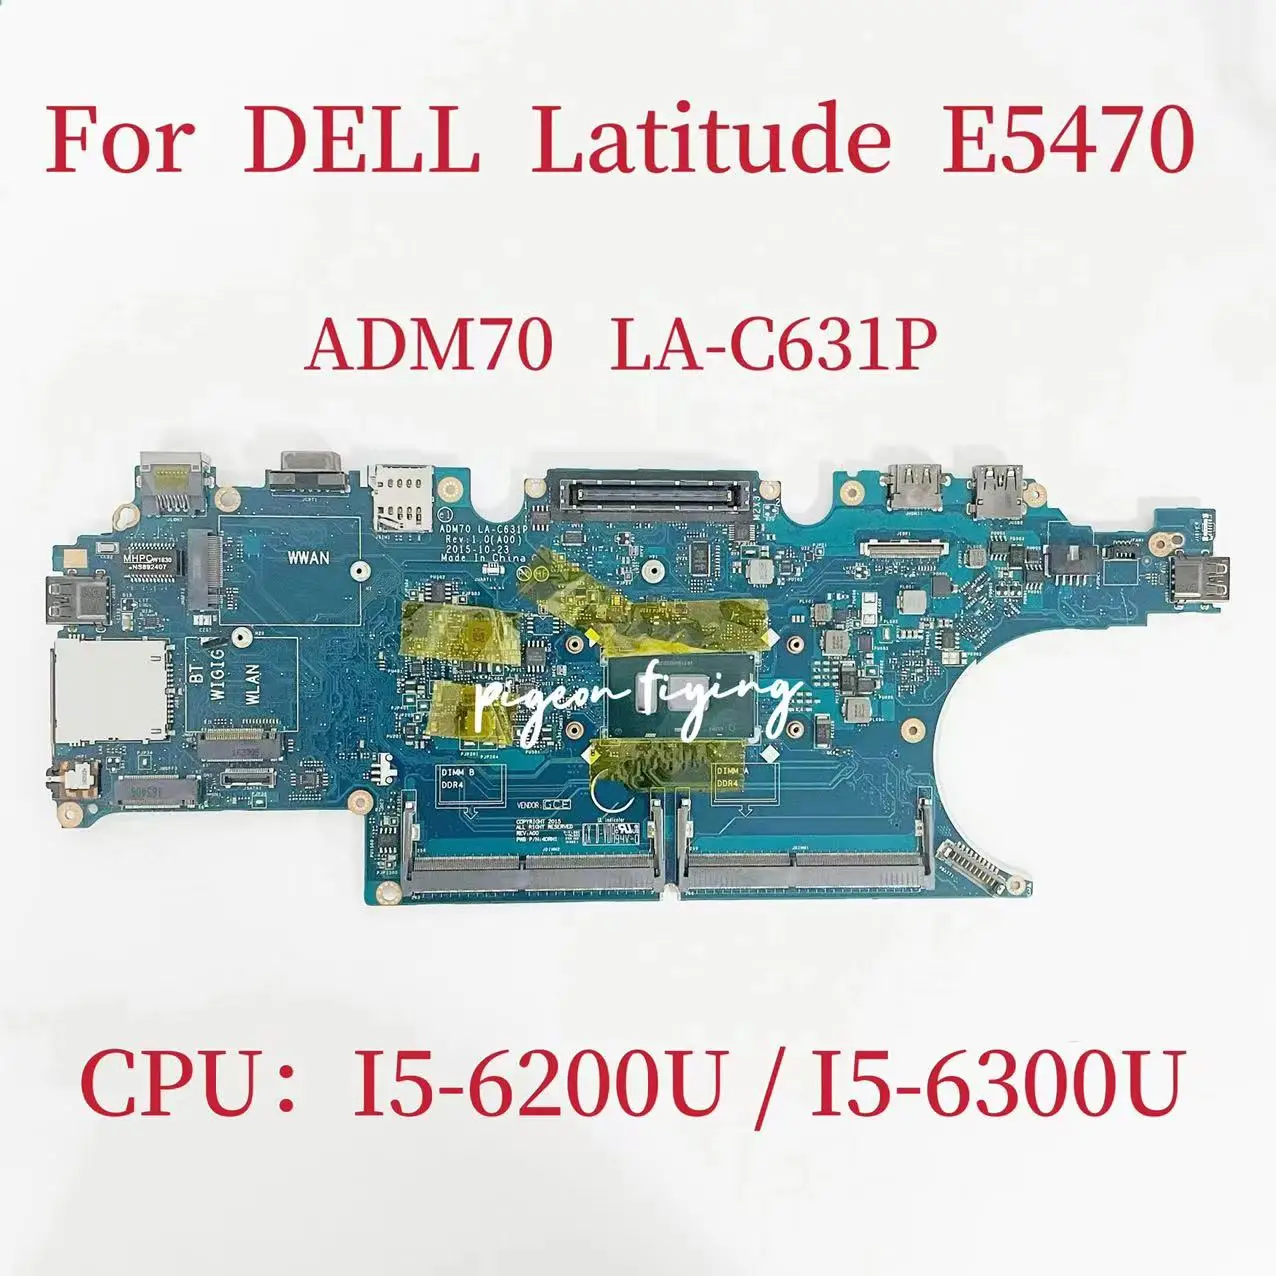 

ADM70 LA-C631P Mainboard For DELL Latitude E5470 Laptop Motherboard CPU: I5-6200U I5-6300U DDR4 CN-0HCP0K CN-0C0NC4 100% Test Ok